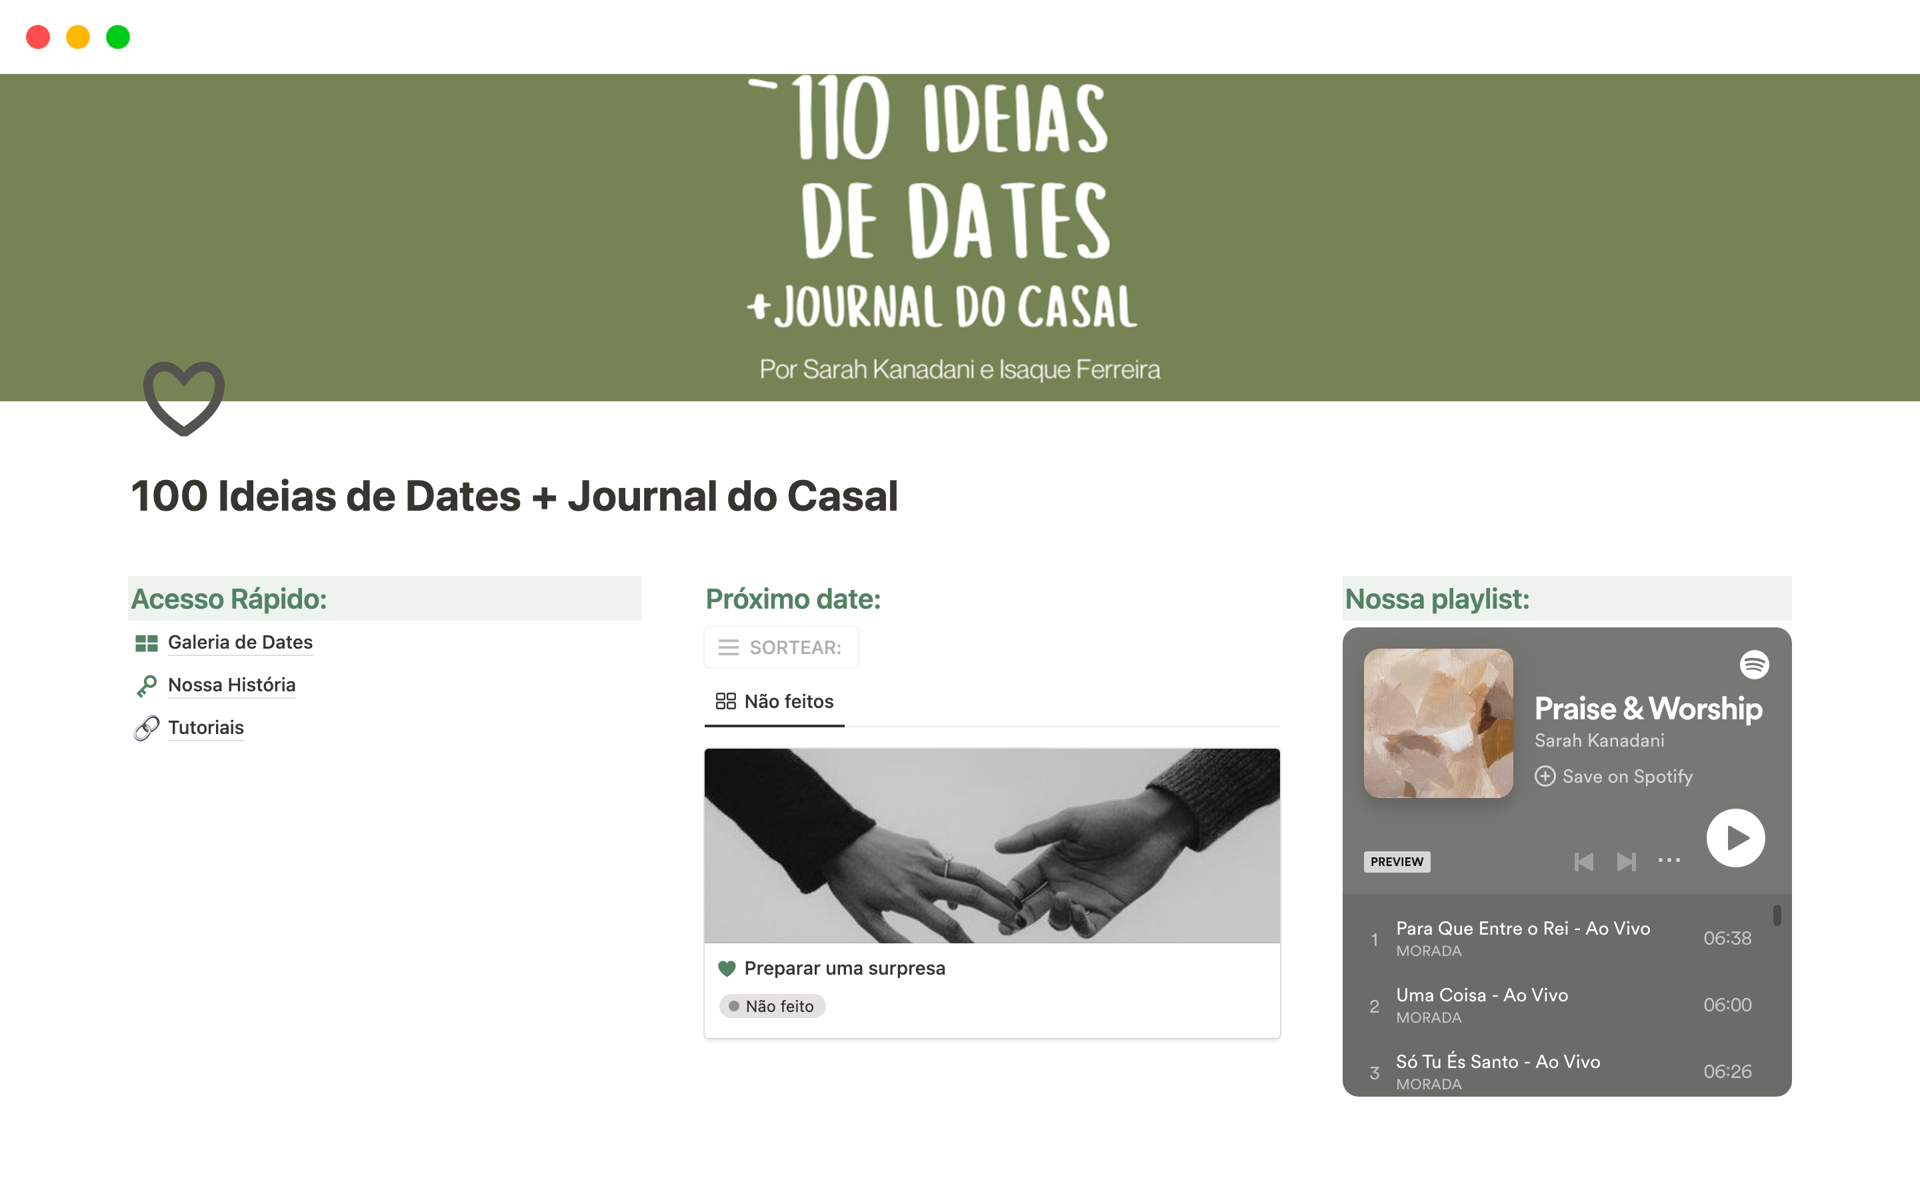 Template com 110 ideias de dates para fazer em casal com ferramenta de sorteio, galeria de dates para personalizar, e um journal completo para registrar a história do casal. 